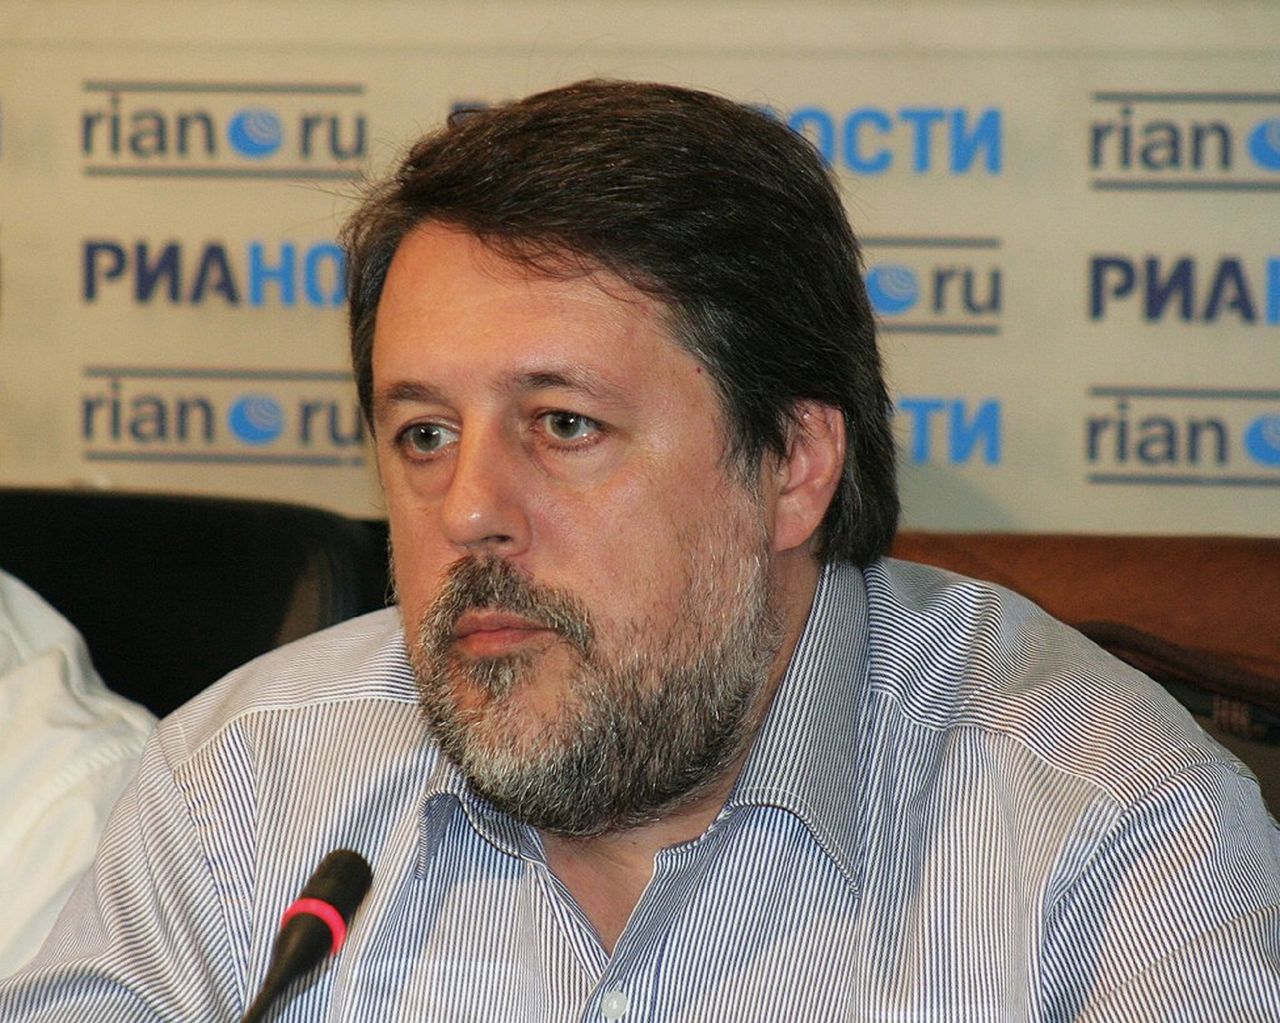 Vitaly Mansky described the activities of Putin.